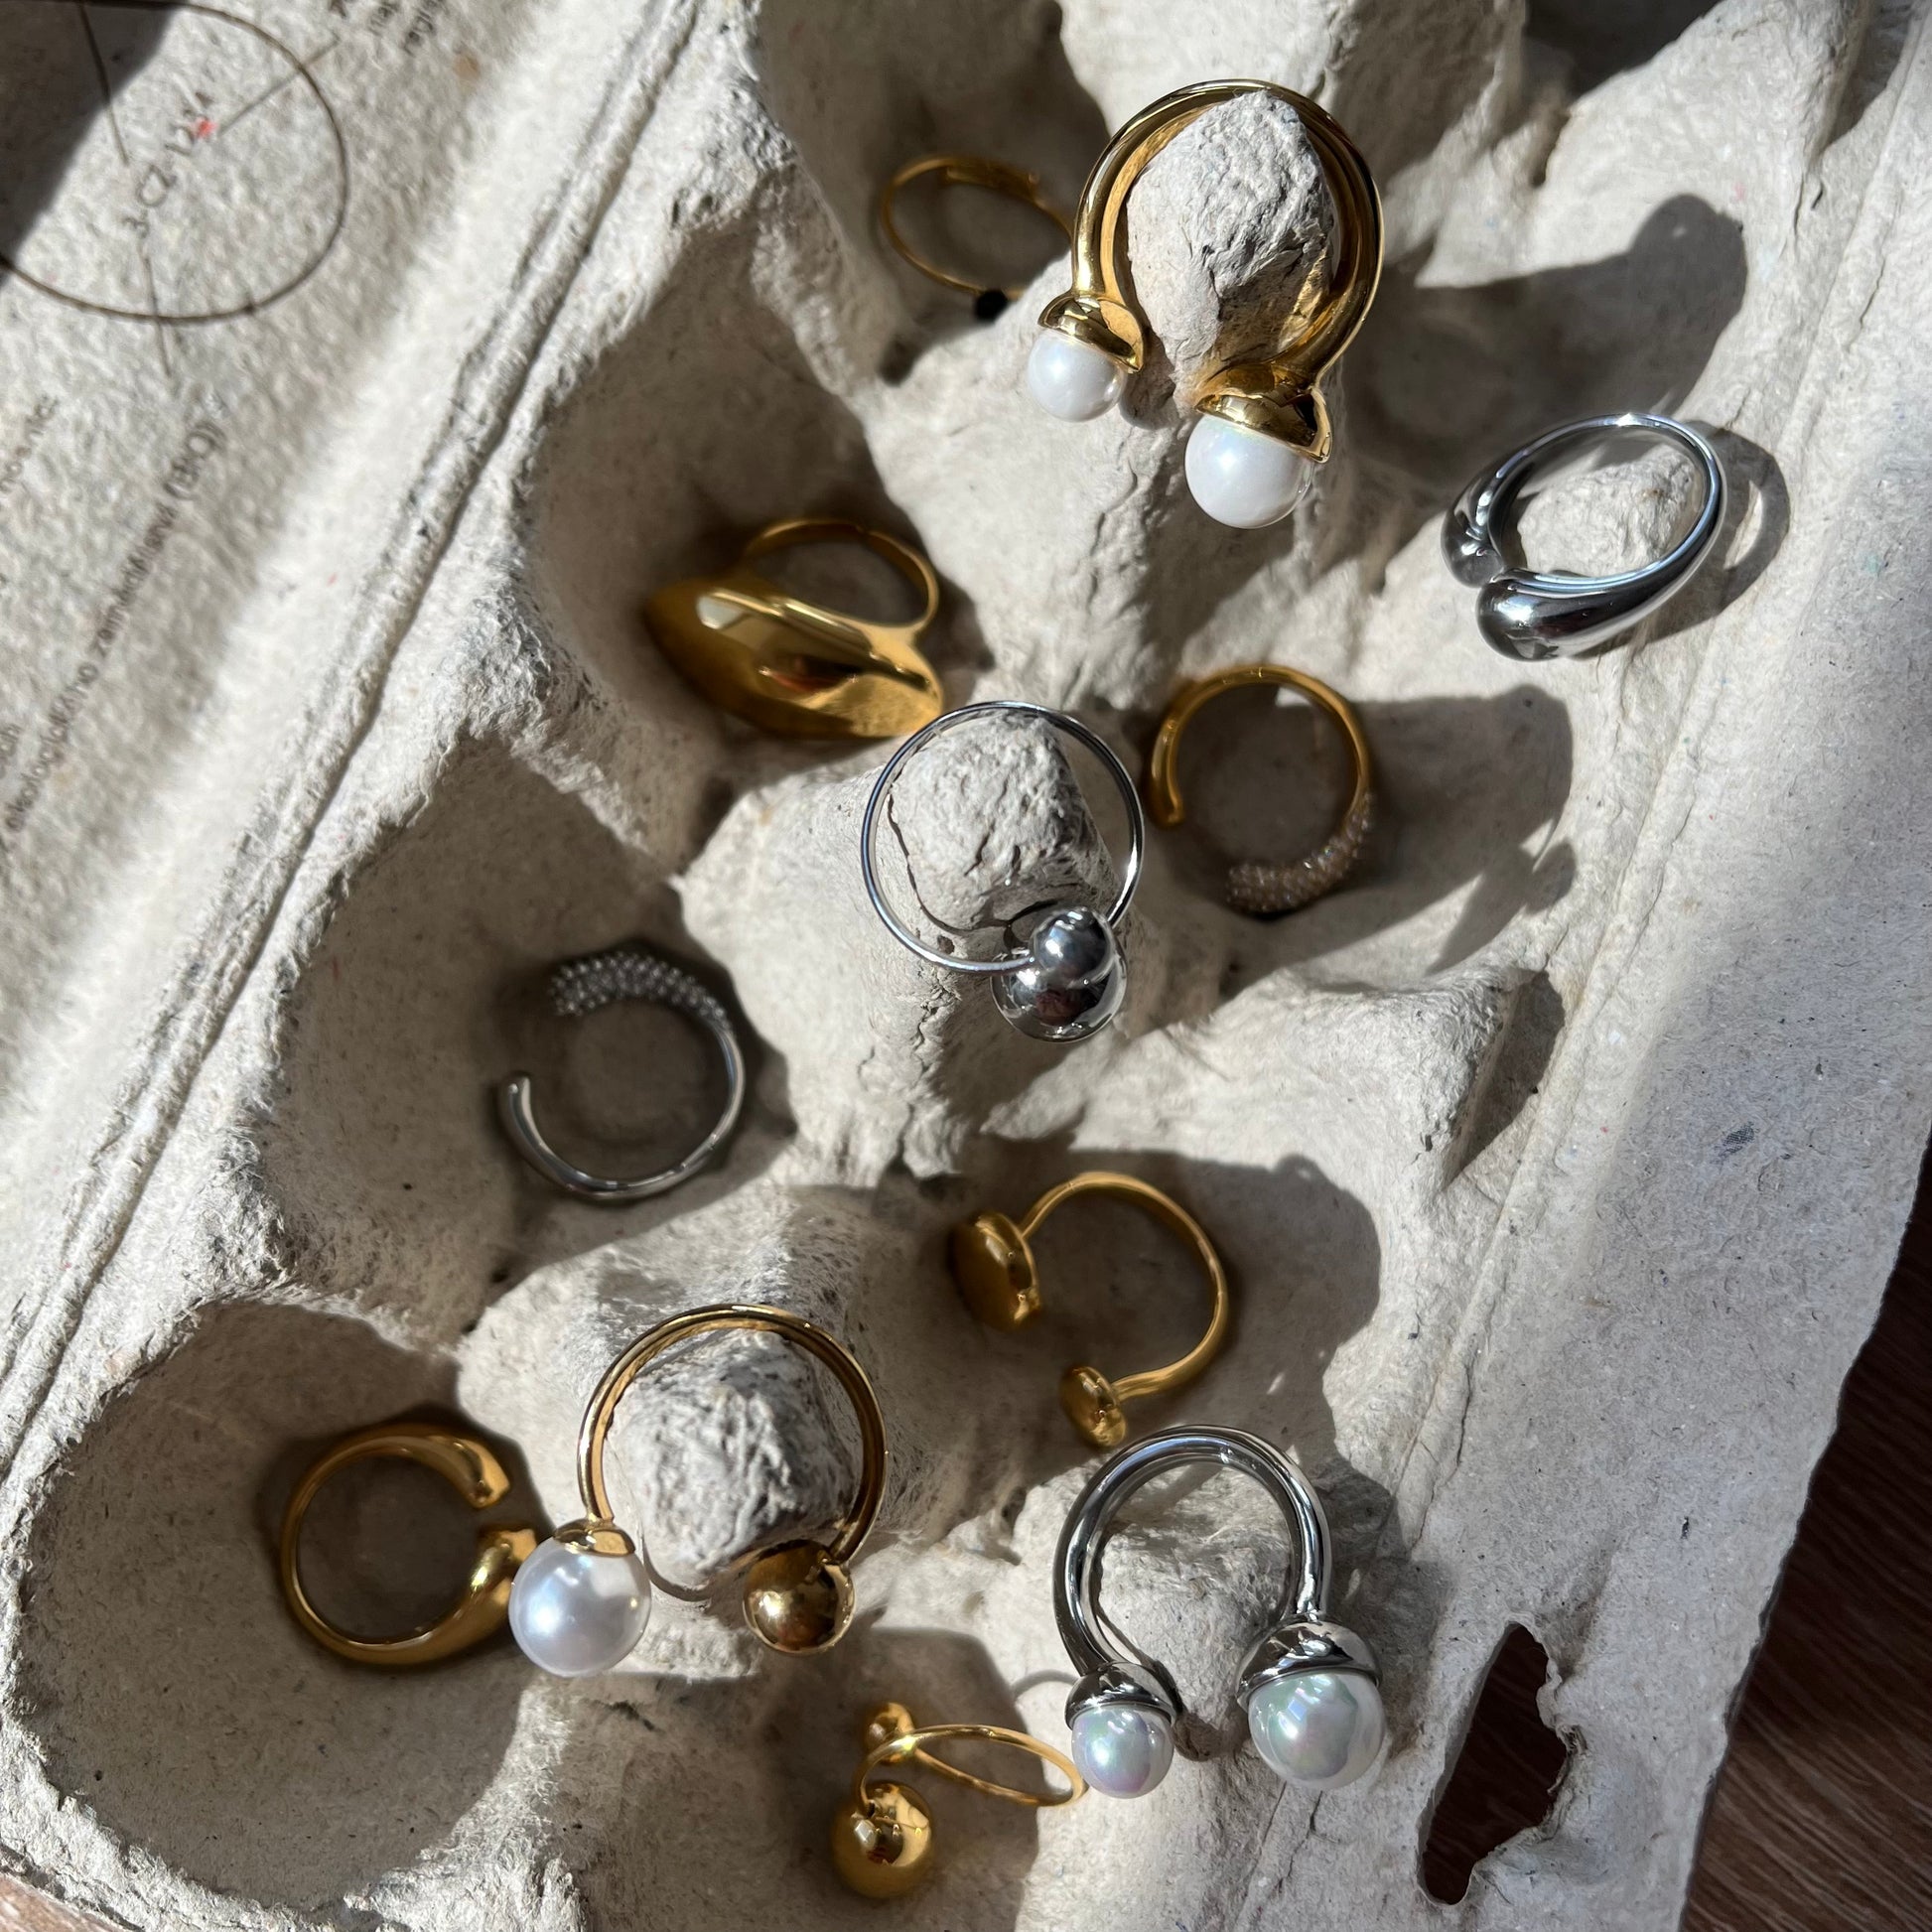 Perlové prsteny, Dámské prsteny s perlou, Prsten s perličkami, perlový prstýnek, stříbrný prsten s pravou perlou, Otevřený prsten s perlou, Prsten s říční perlou, stříbrný perlový prsten